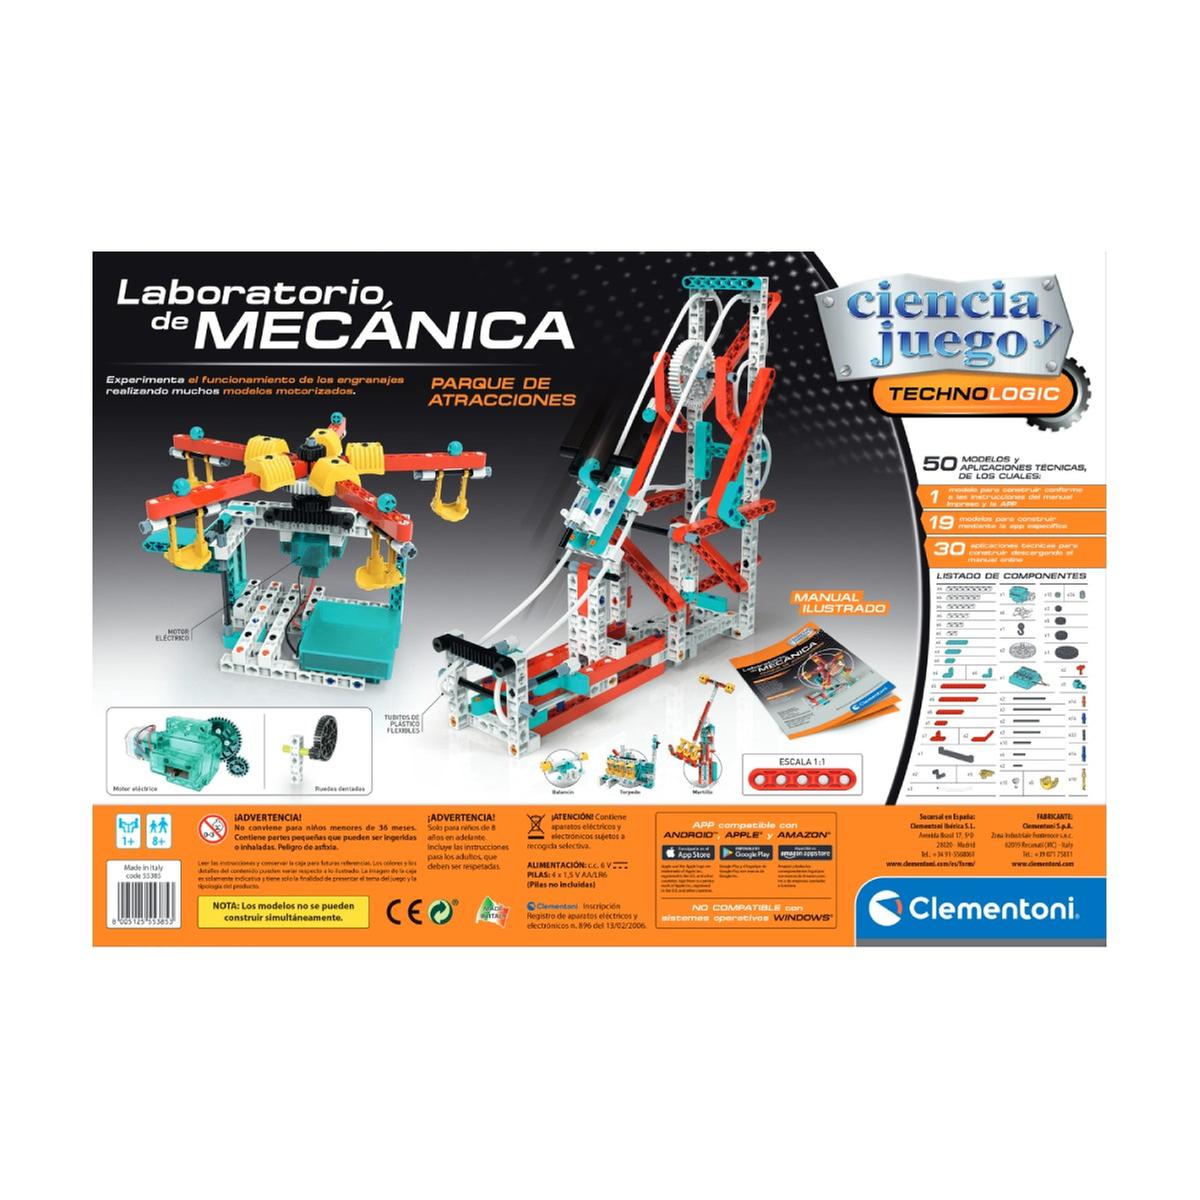 Laboratorio de Mecánica- Parque de Atracciones | Clementoni Ciencia |  Toys"R"Us España